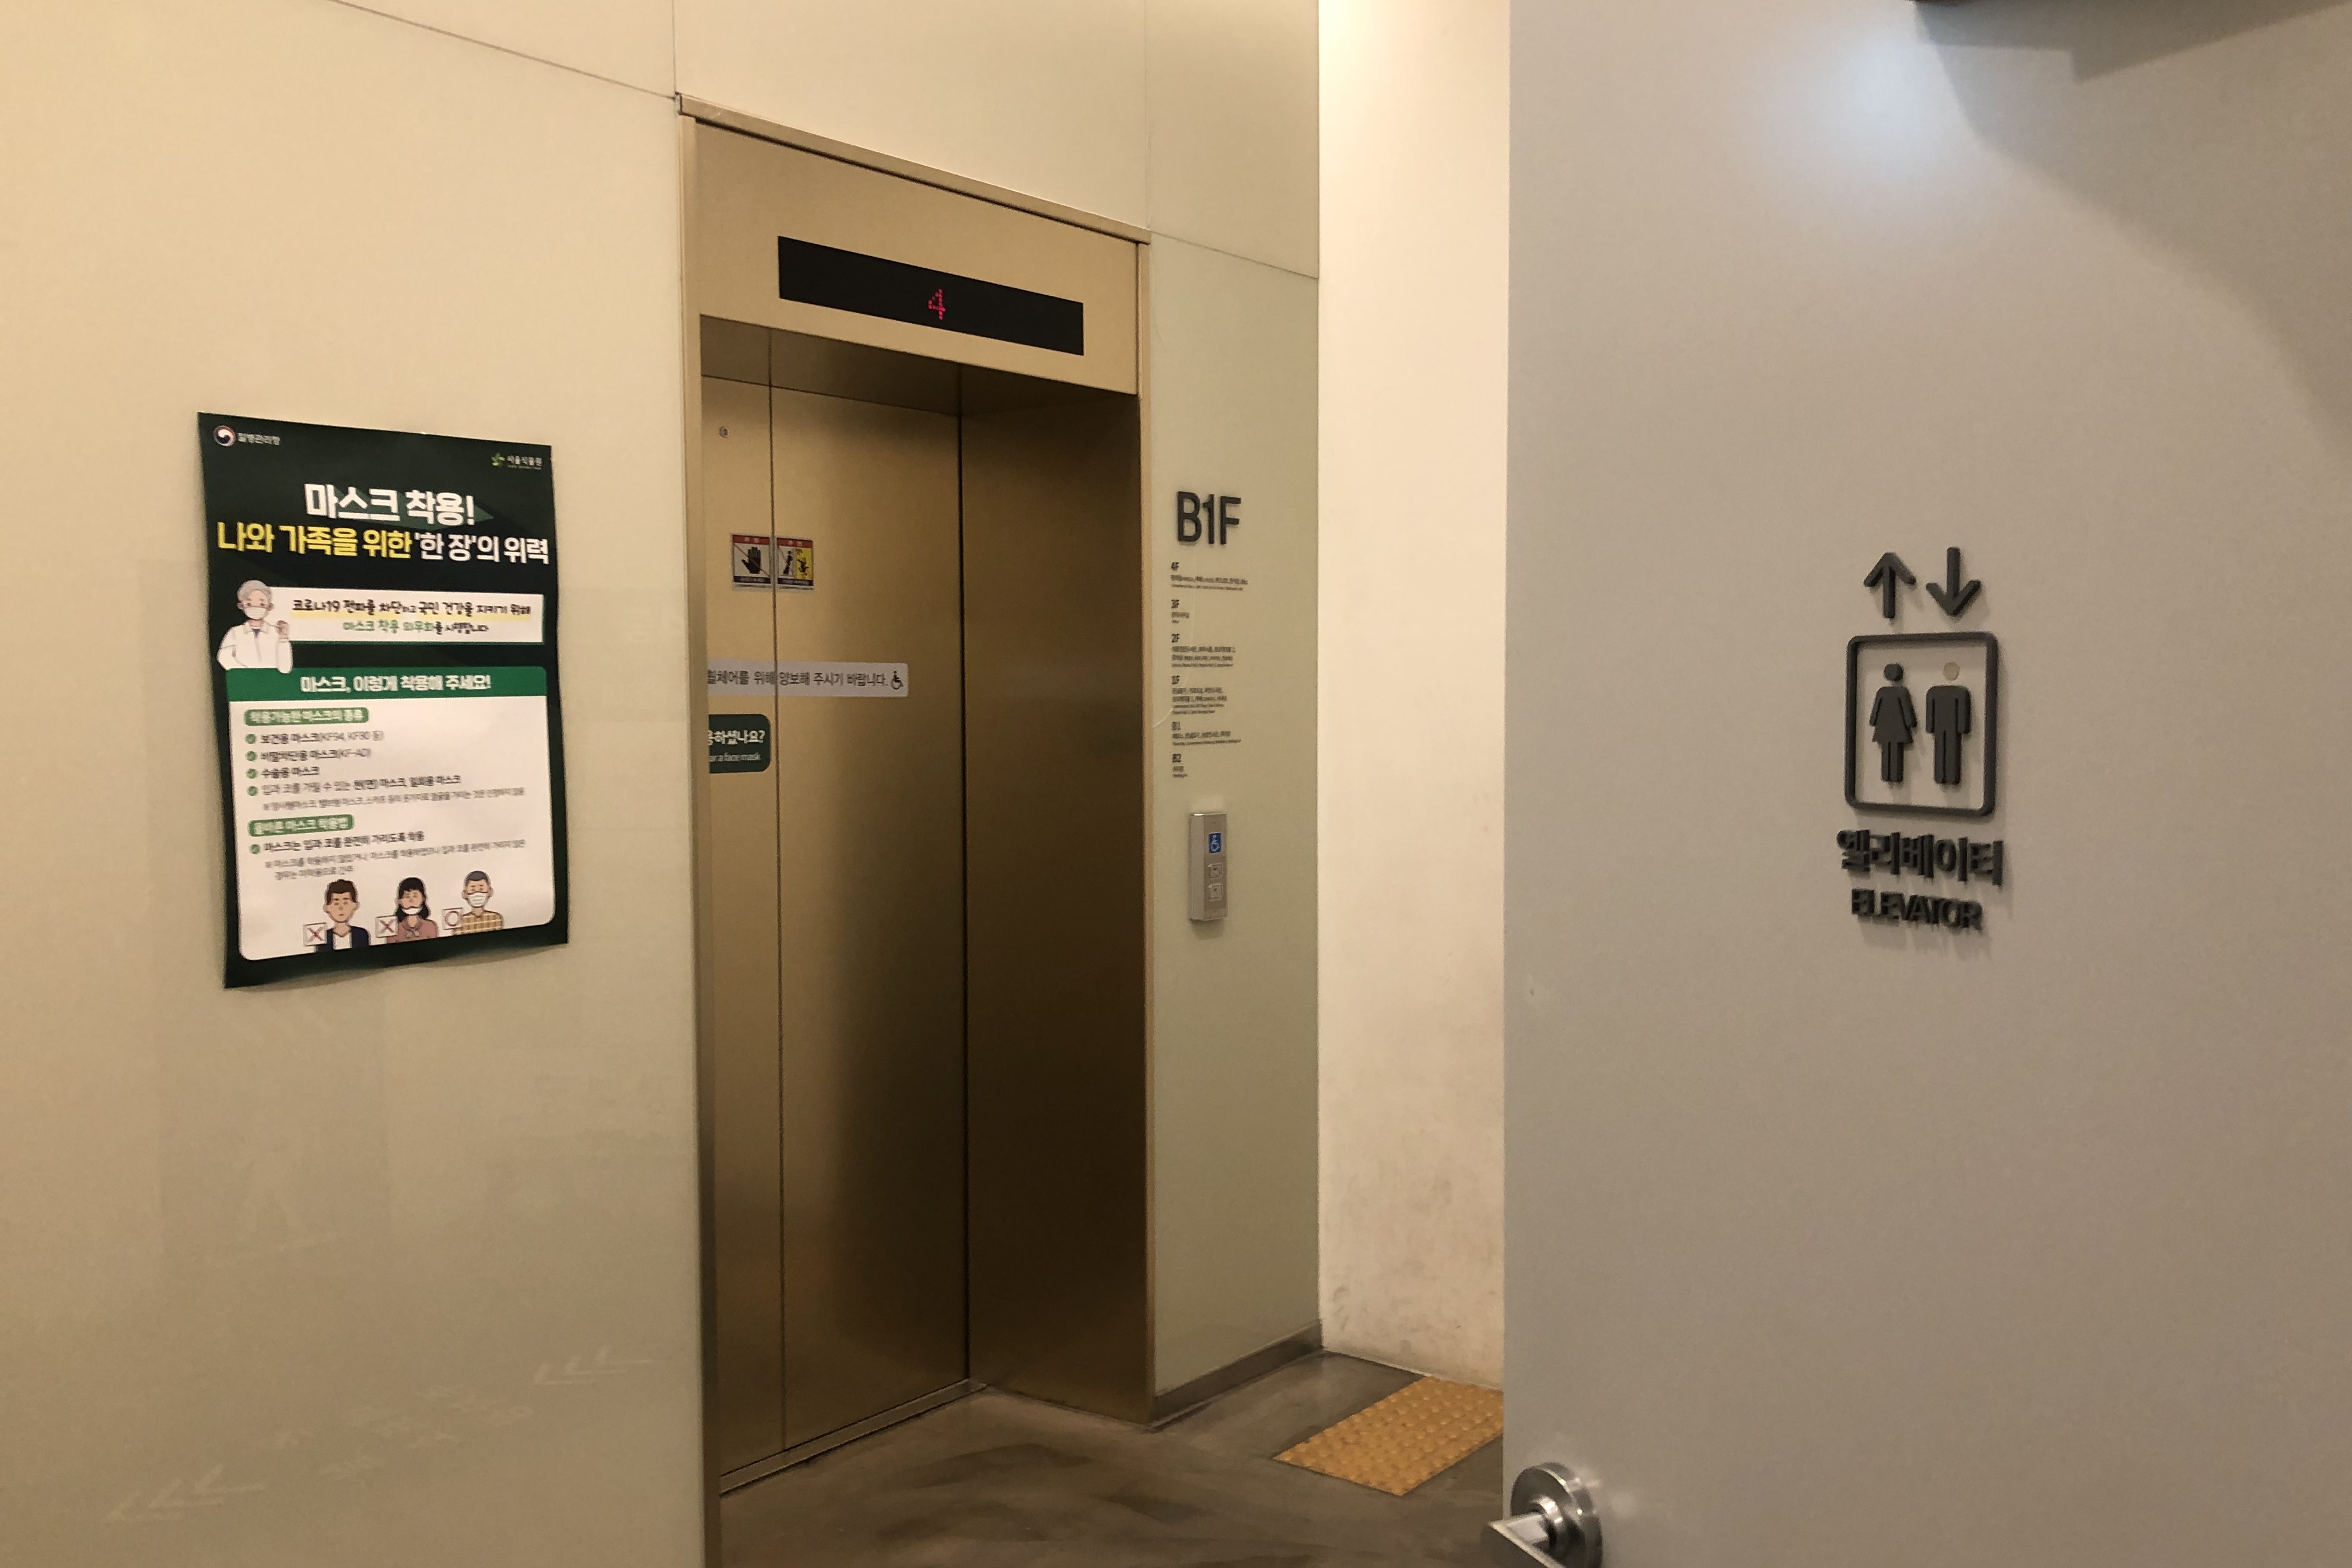 엘리베이터0 : 서울식물원 실내 엘리베이터 외부 모습
